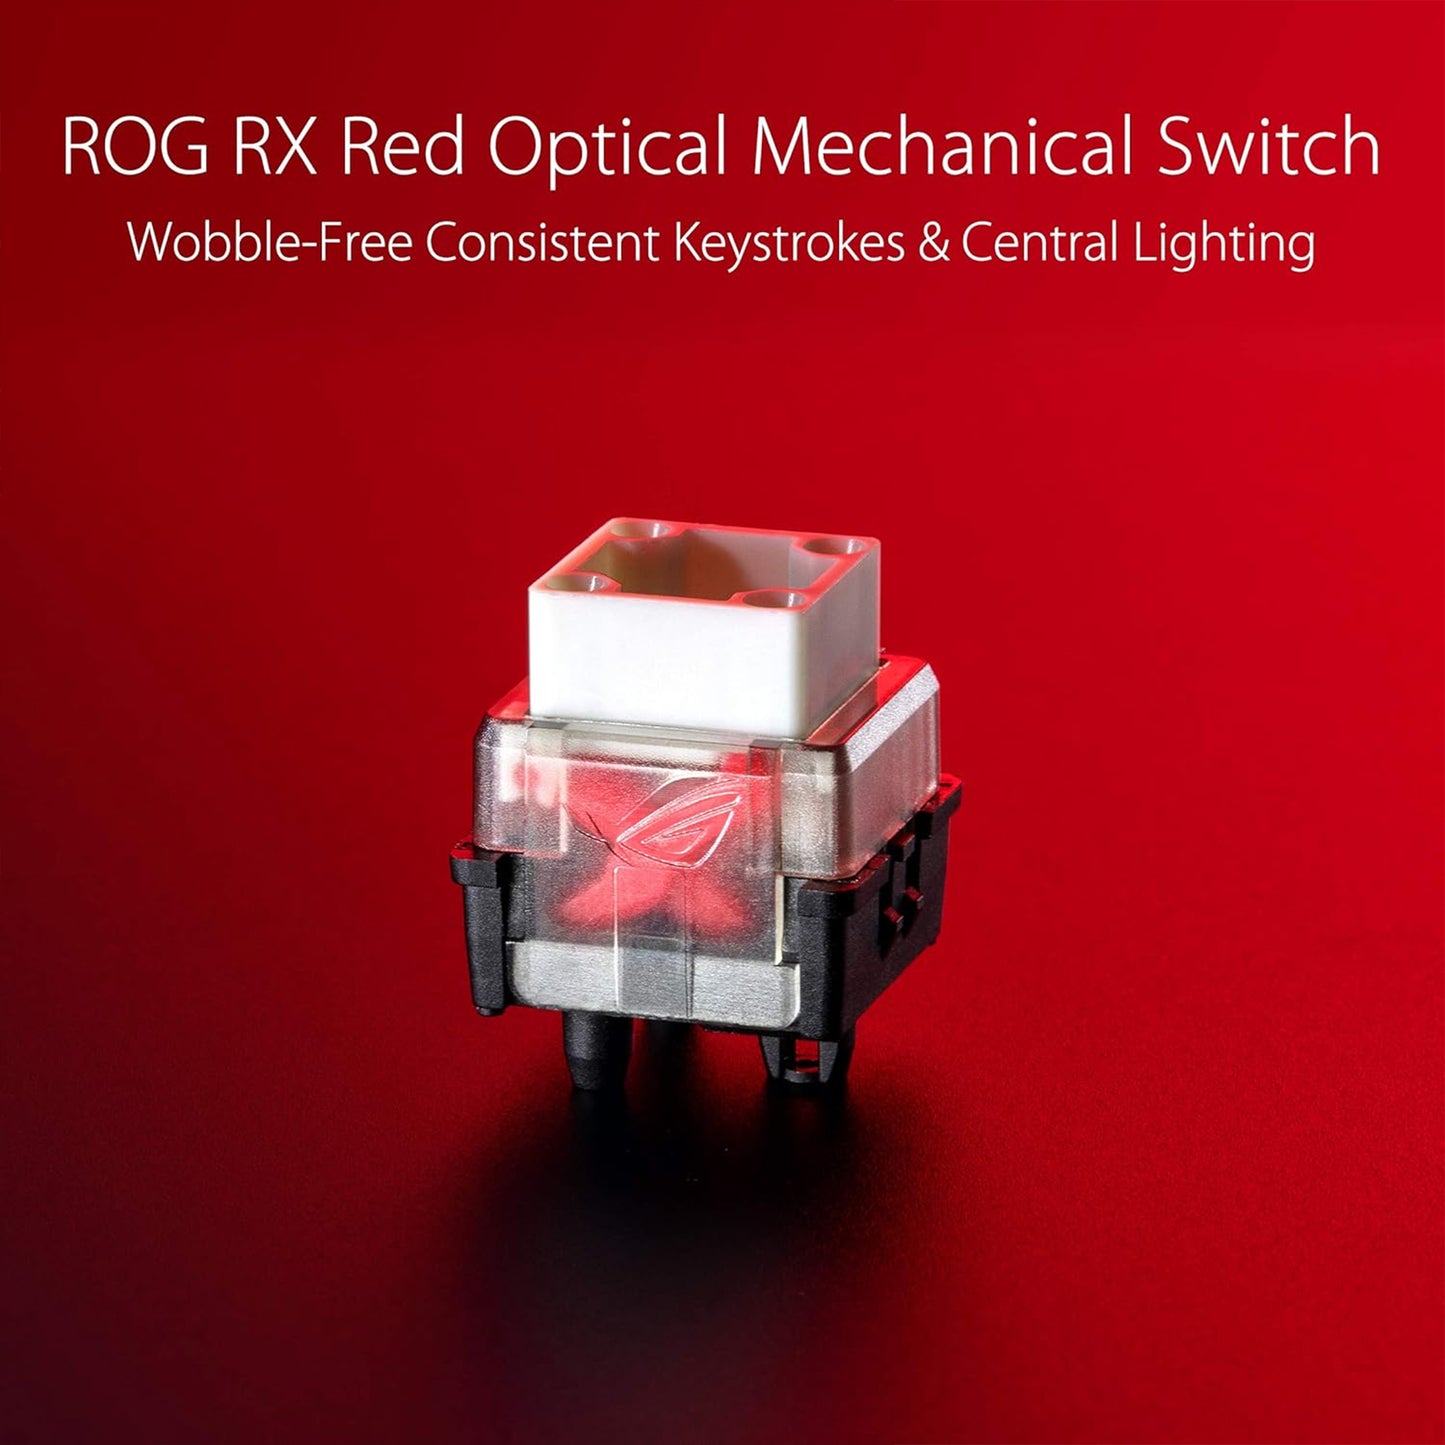 لوحة مفاتيح ميكانيكية للألعاب ASUS ROG Strix Scope RX، مفاتيح بصرية حمراء، ممر USB 2.0، مفتاح Ctrl أوسع 2X، مزامنة Aura، إضاءة Armory Crate RGB، أسود 